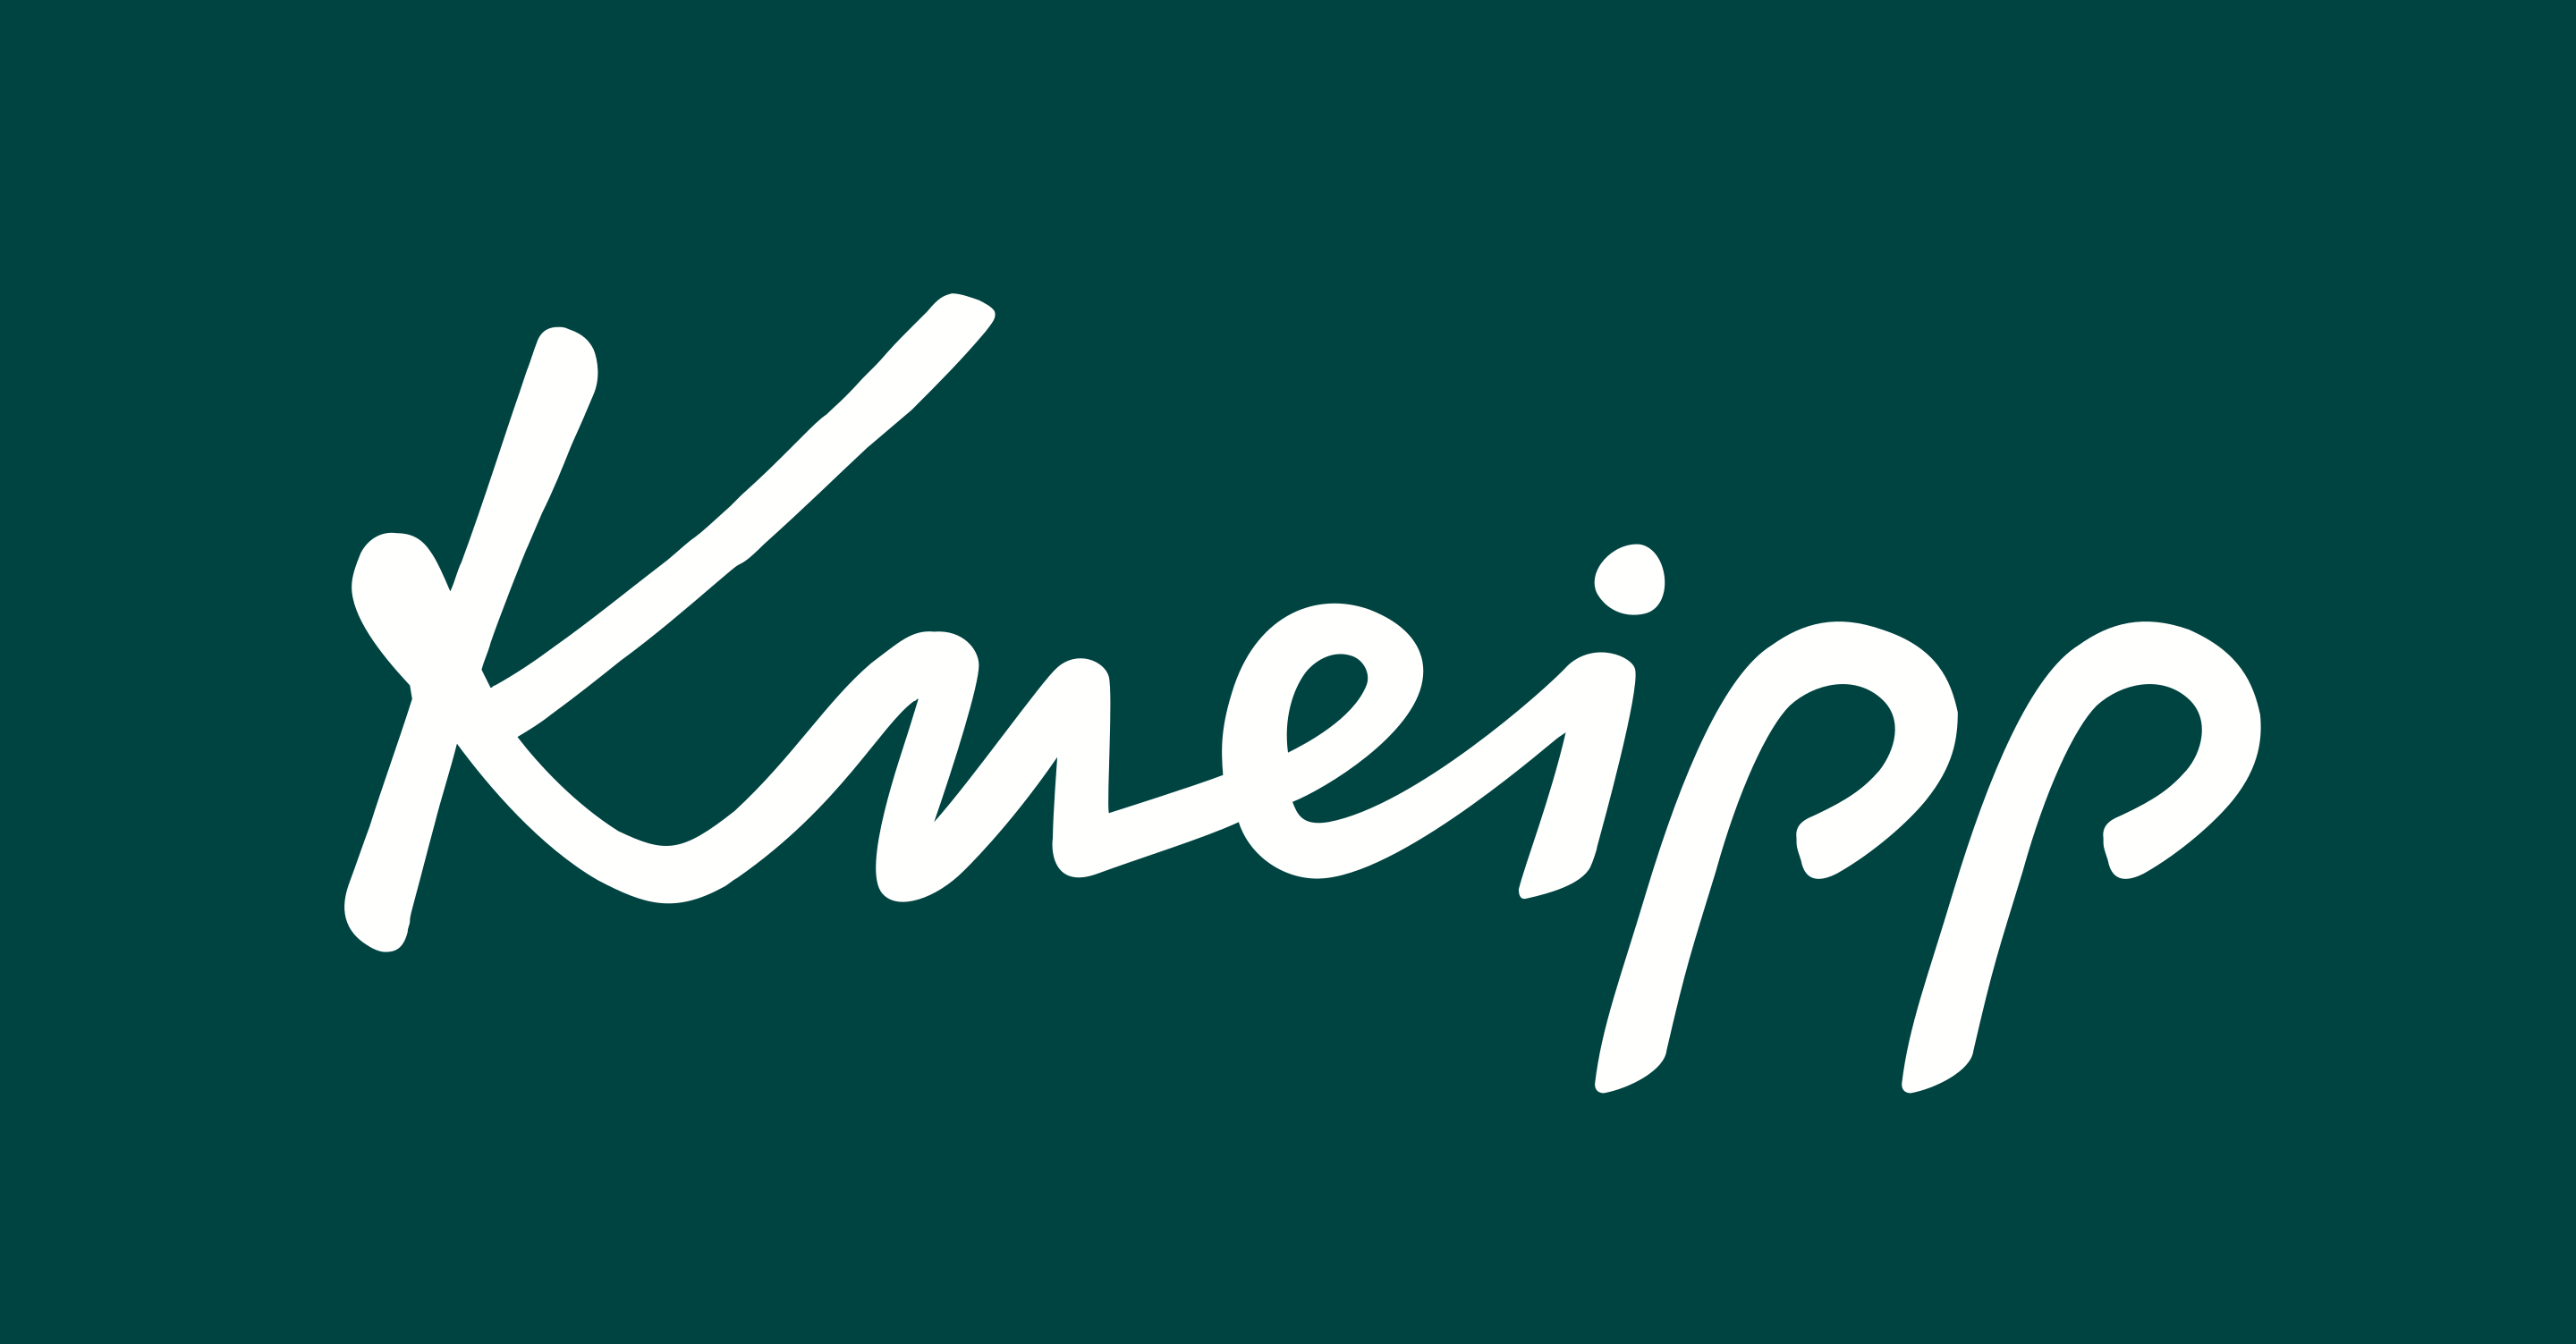 Logo Kneipp